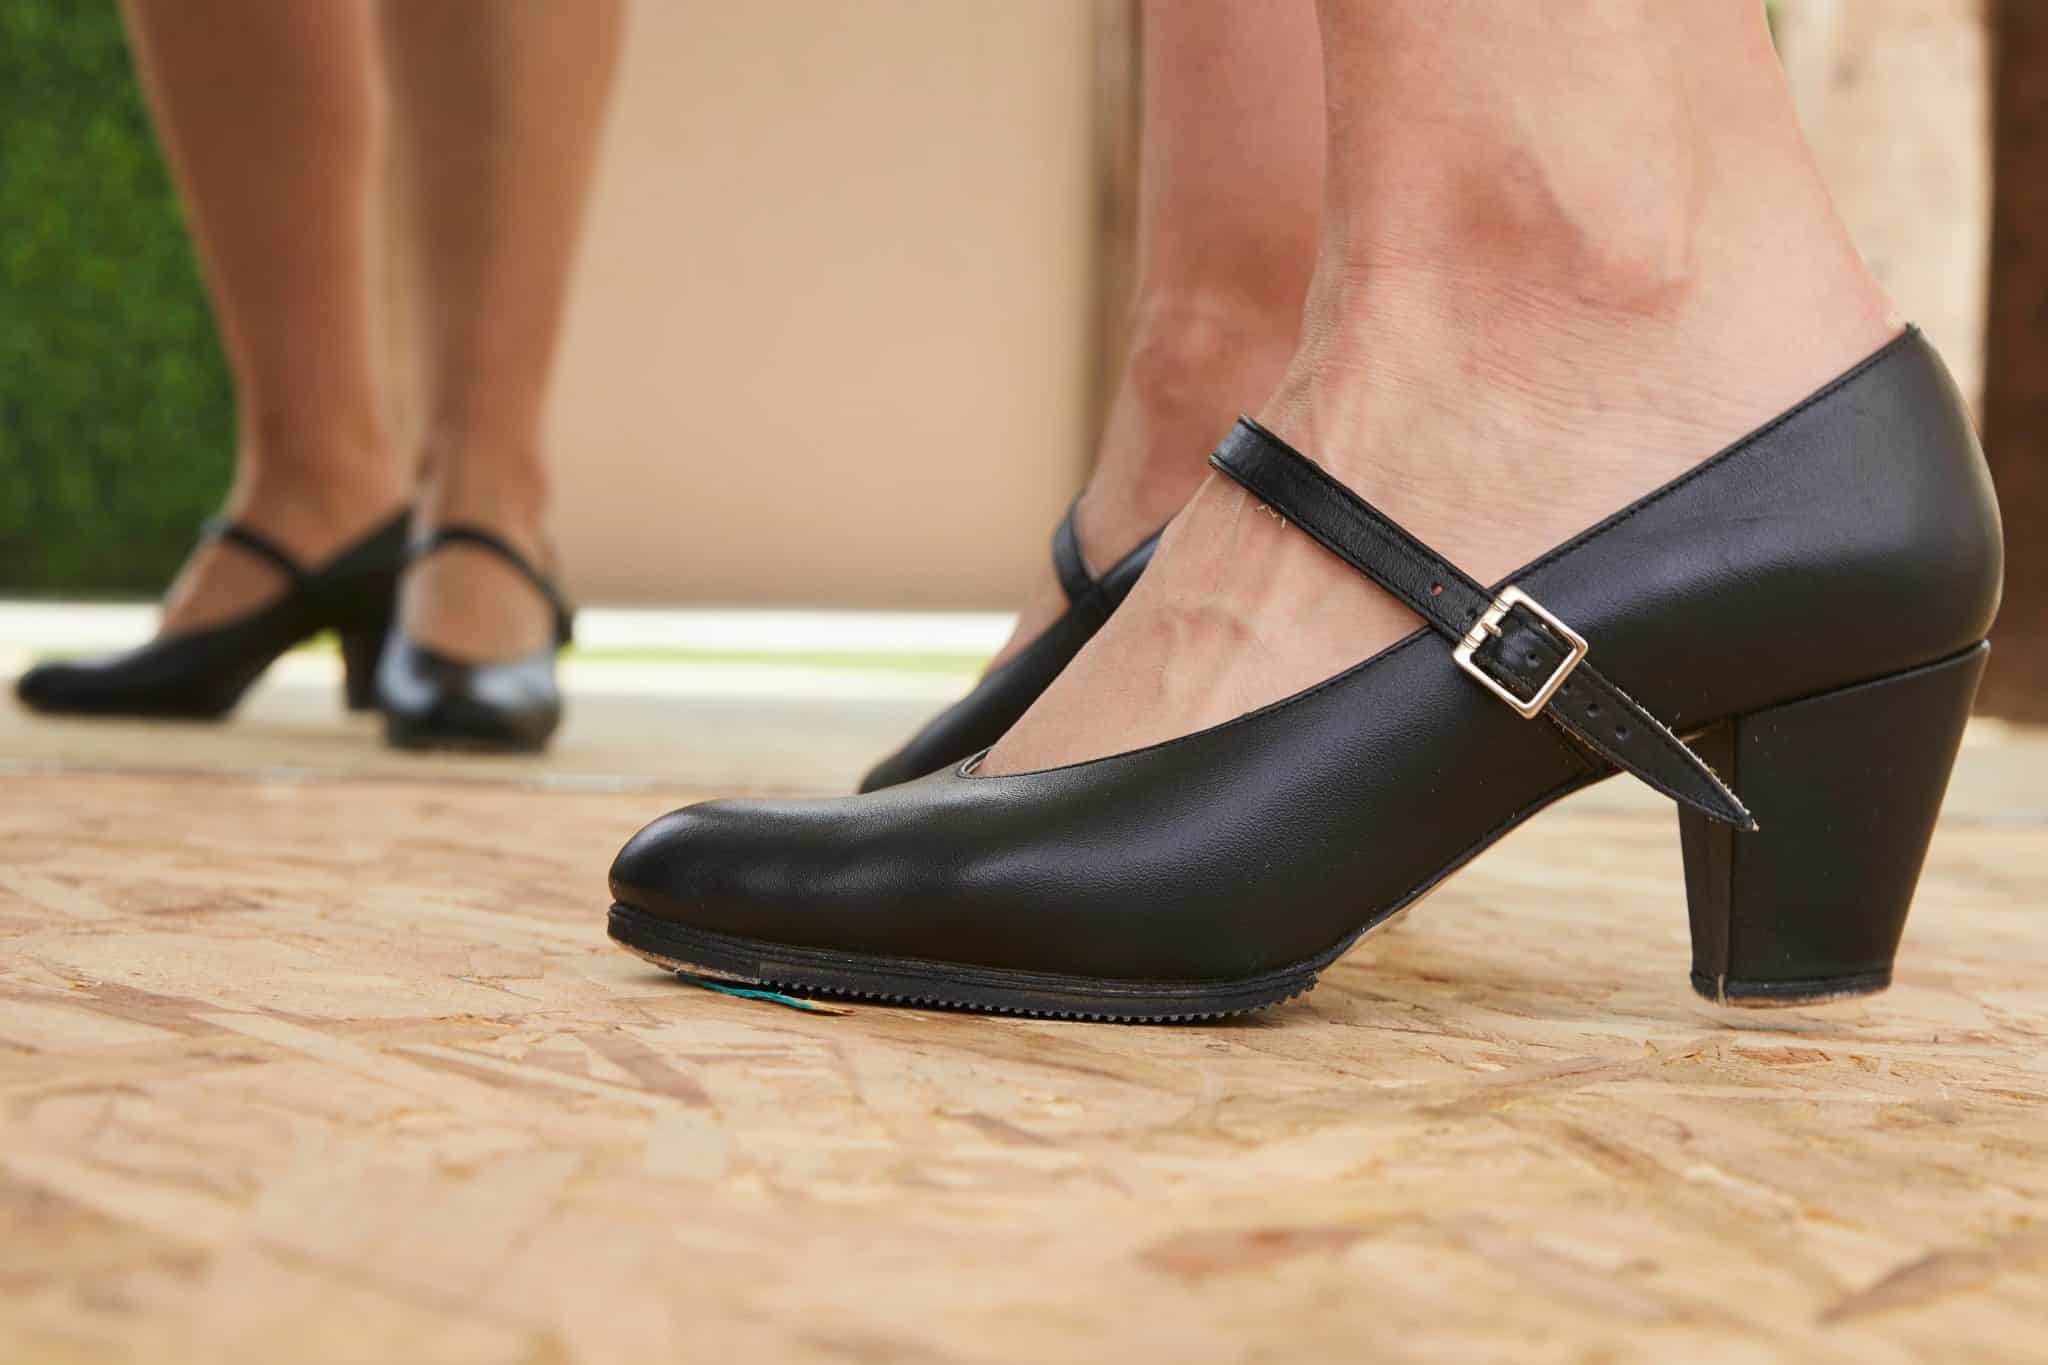 El sendero Inducir Viento 8 pasos para elegir el zapato profesional de baile perfecto